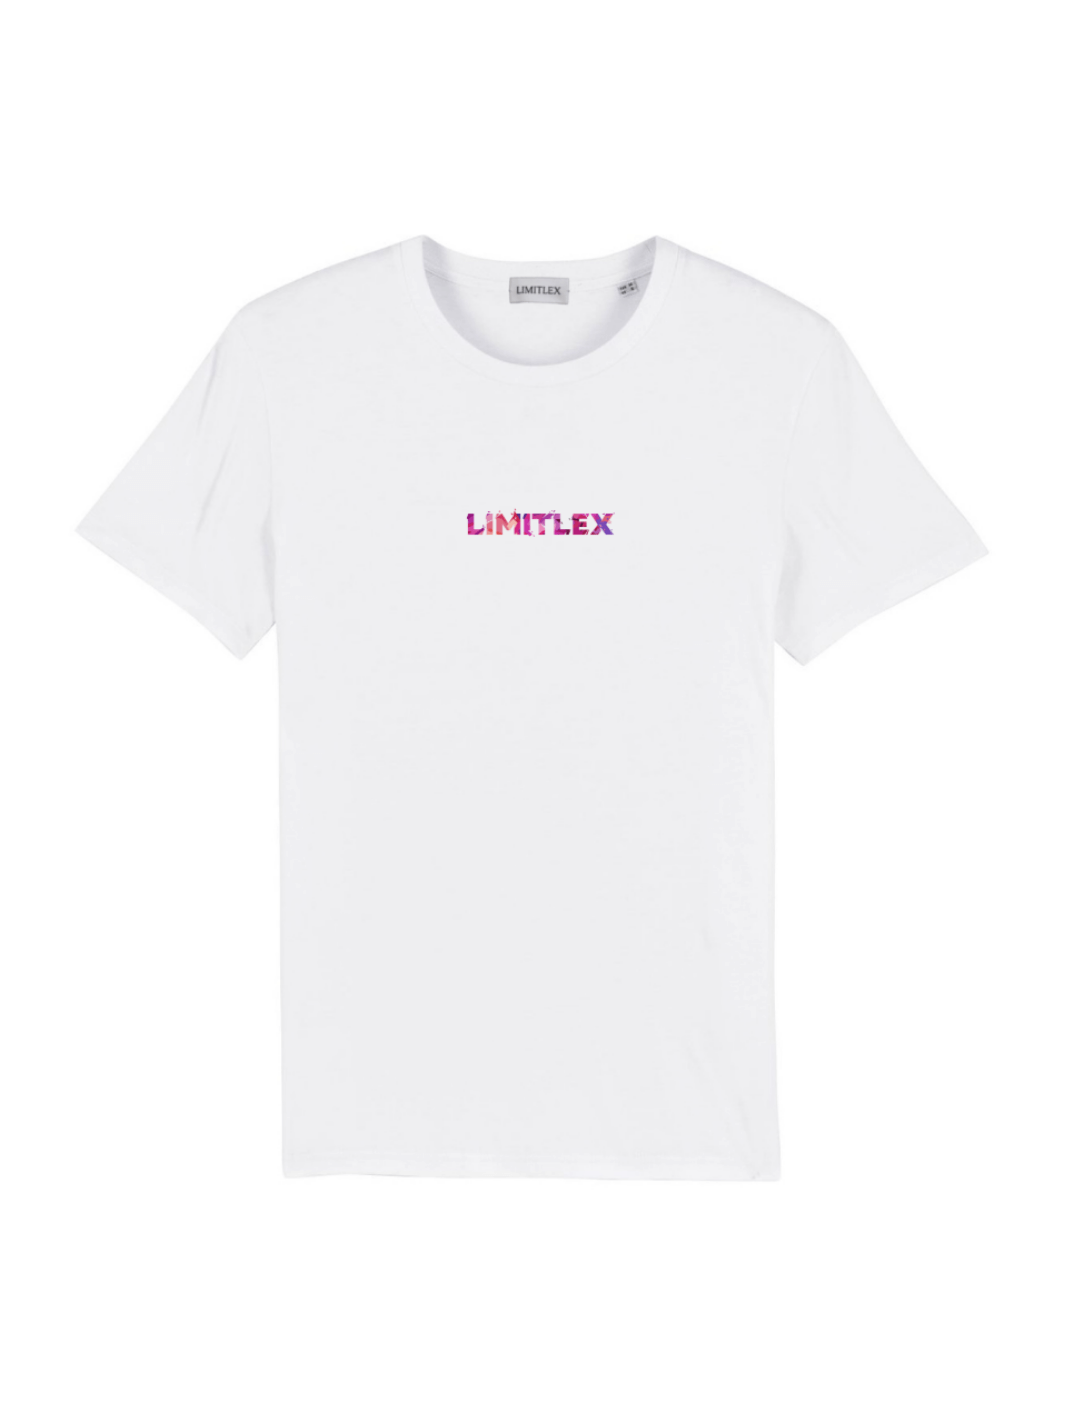 T-shirt essential bianca con scritta Limitlex sul petto.